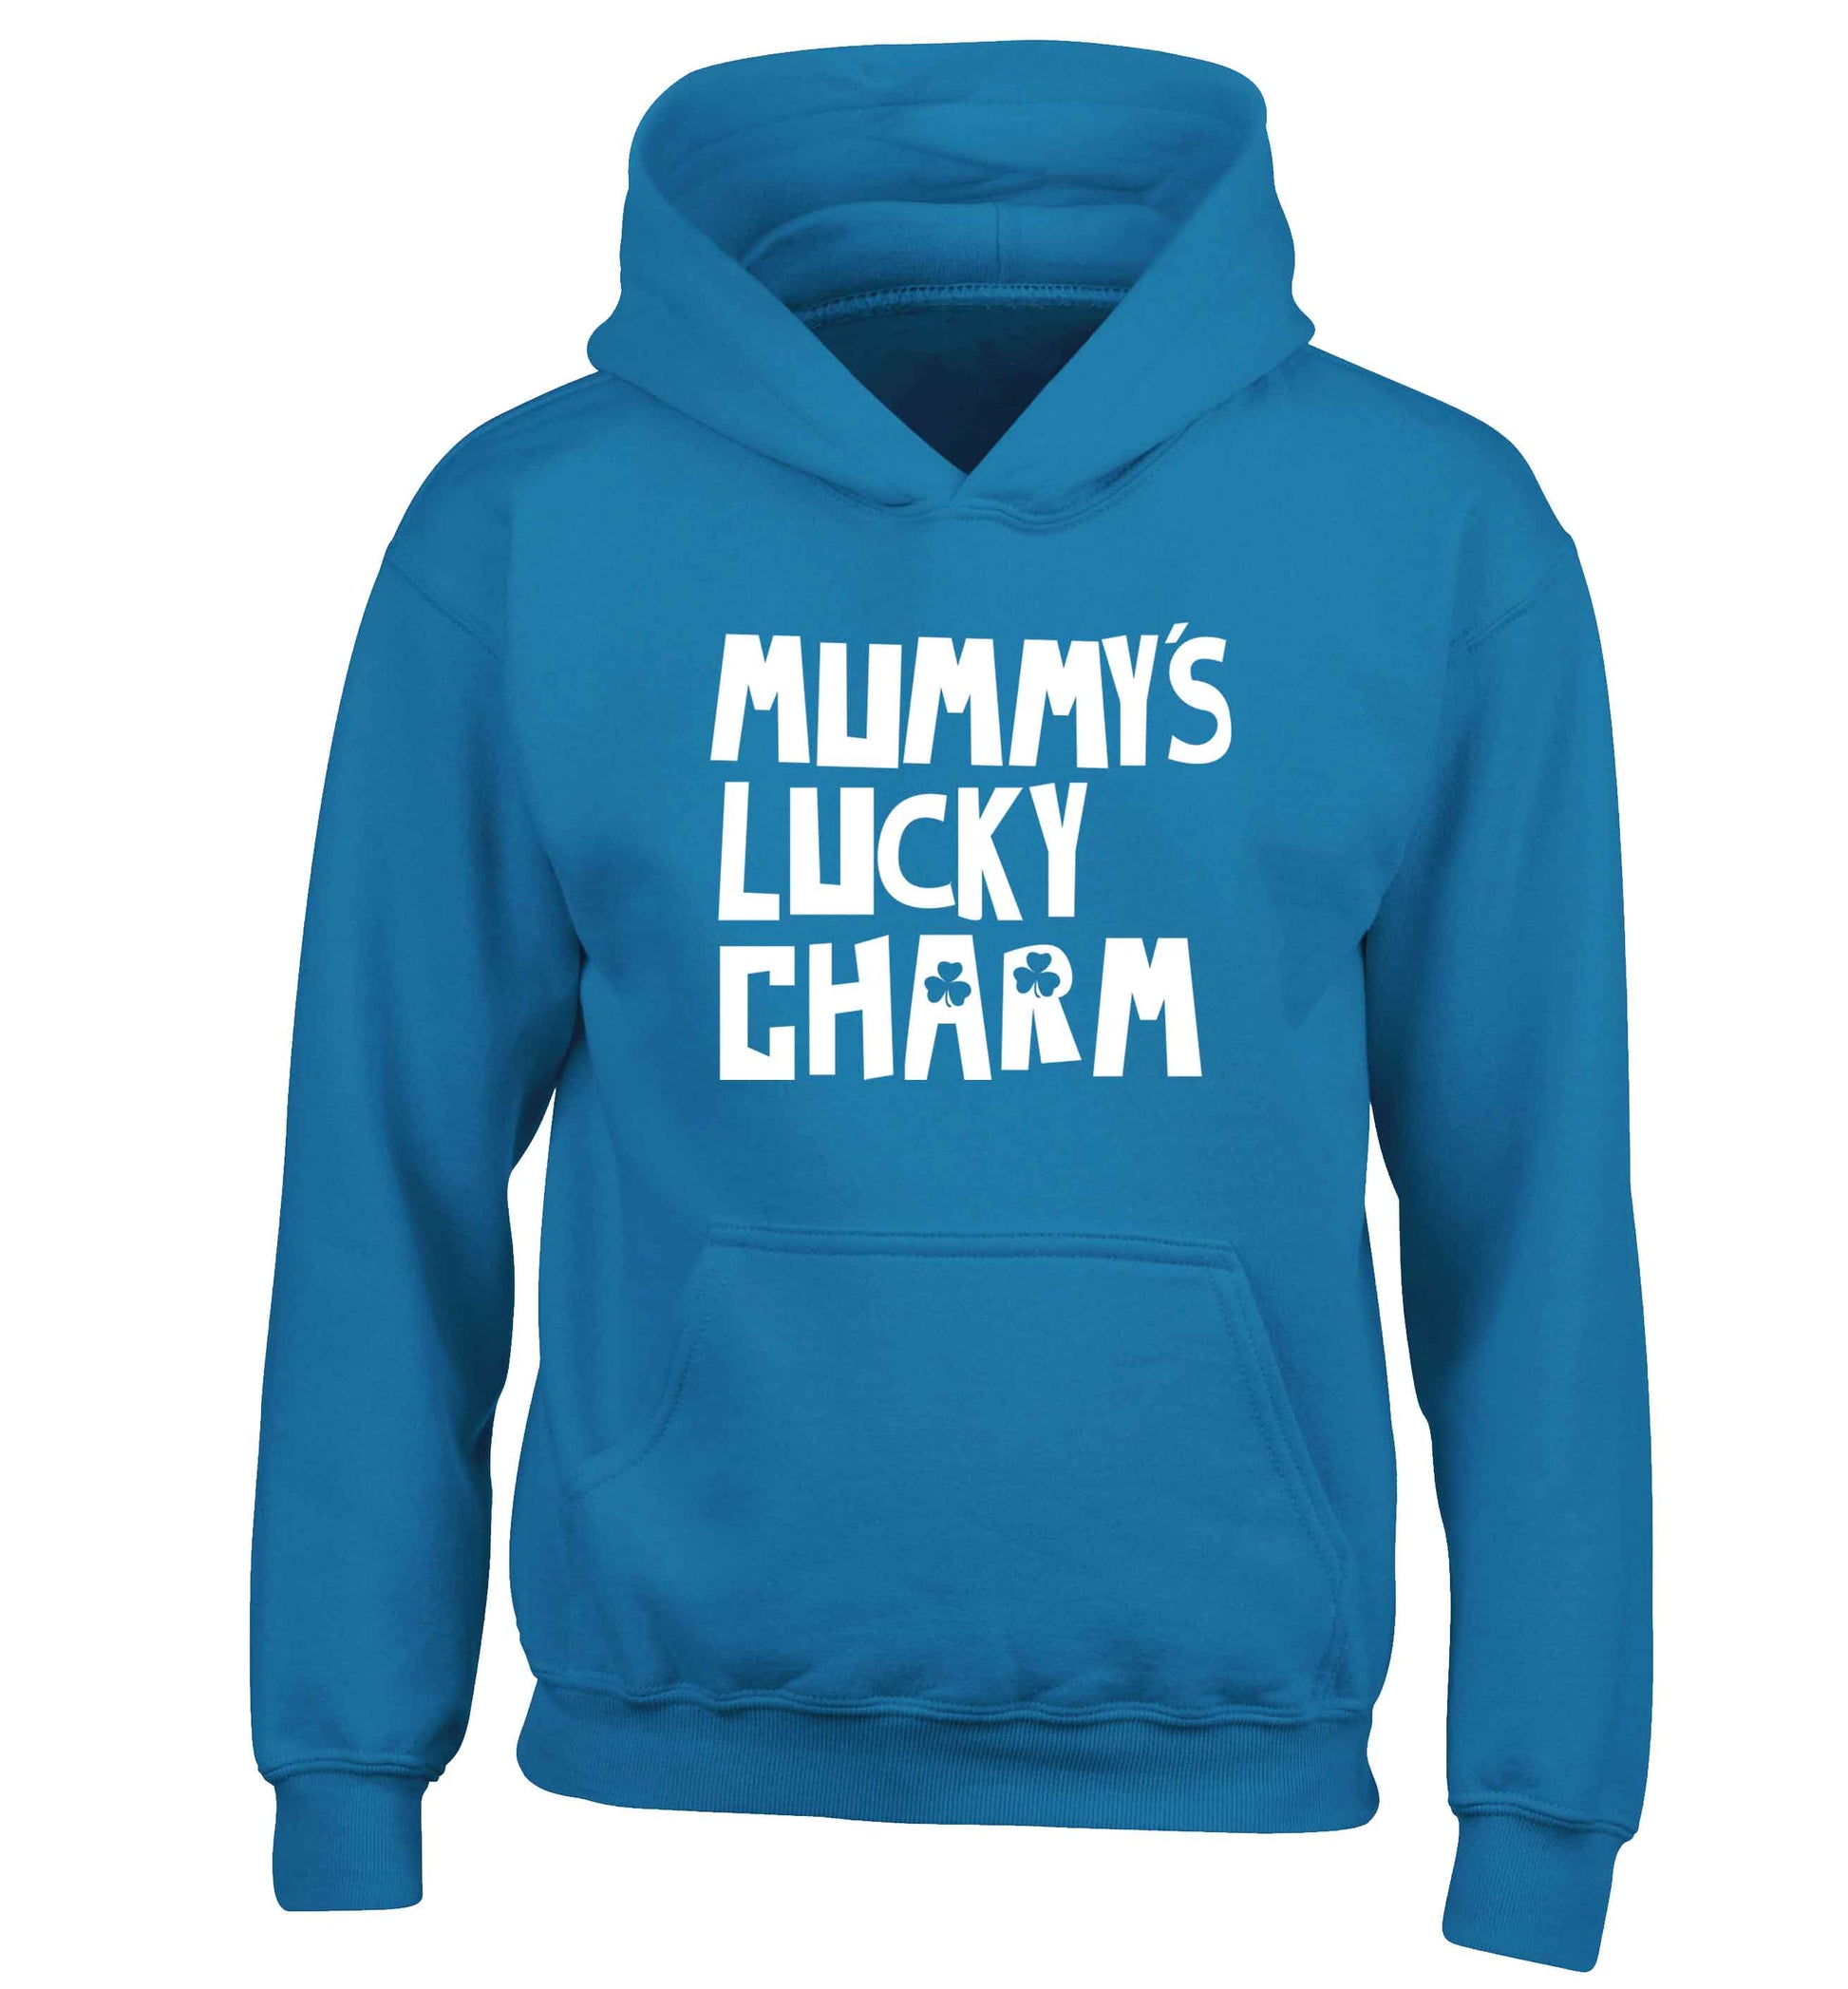 Mummy's lucky charm children's blue hoodie 12-13 Years